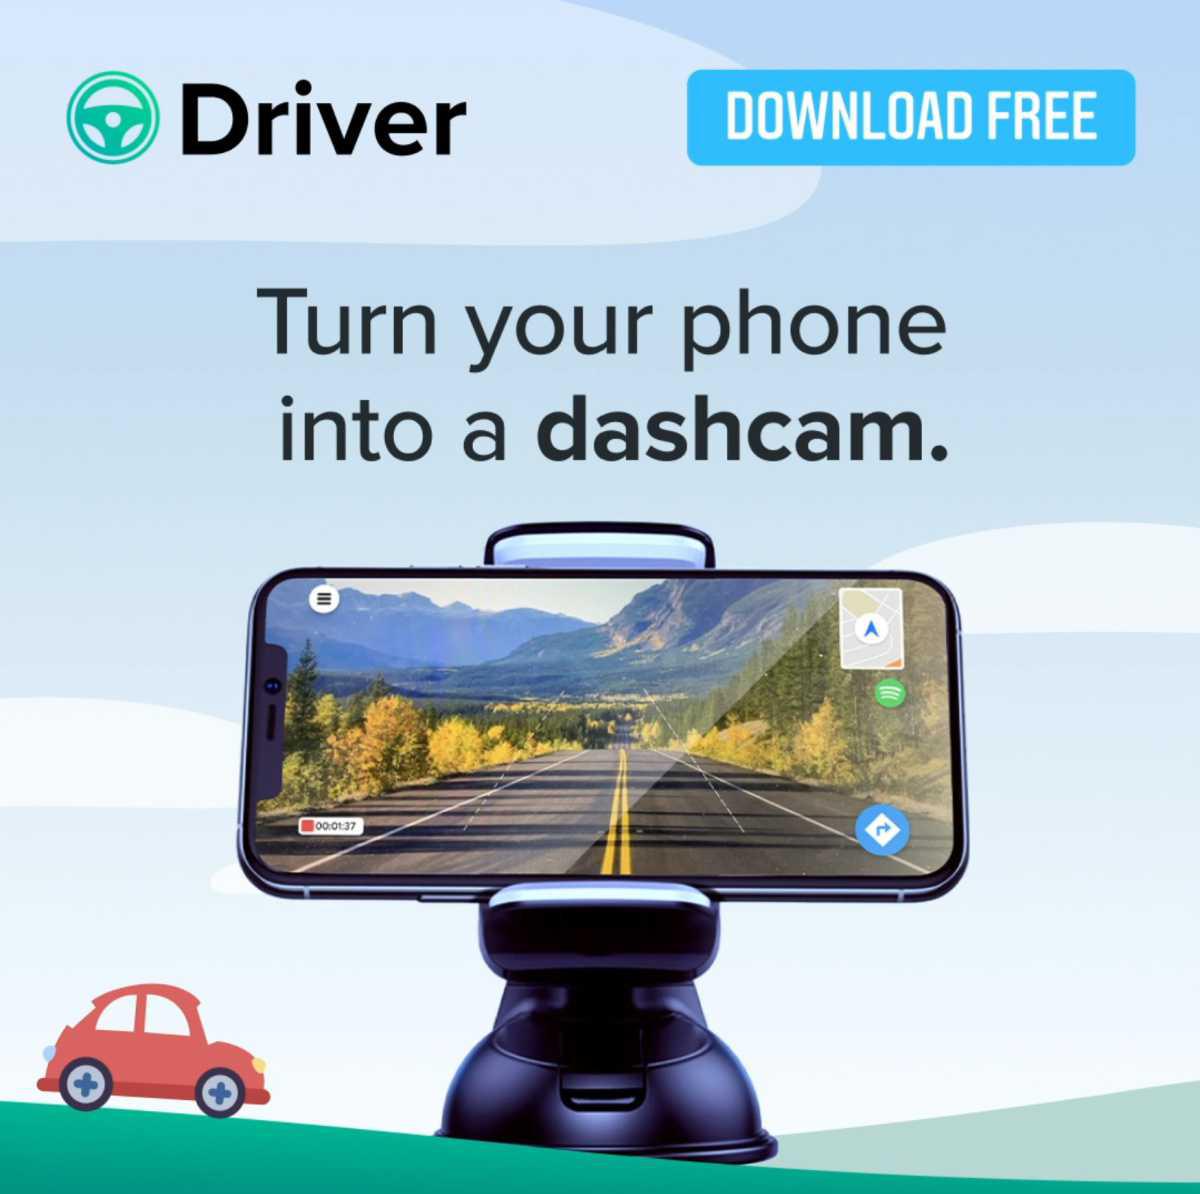 Driver - The Dash Cam Super App introduces DriverPremium PLUS!